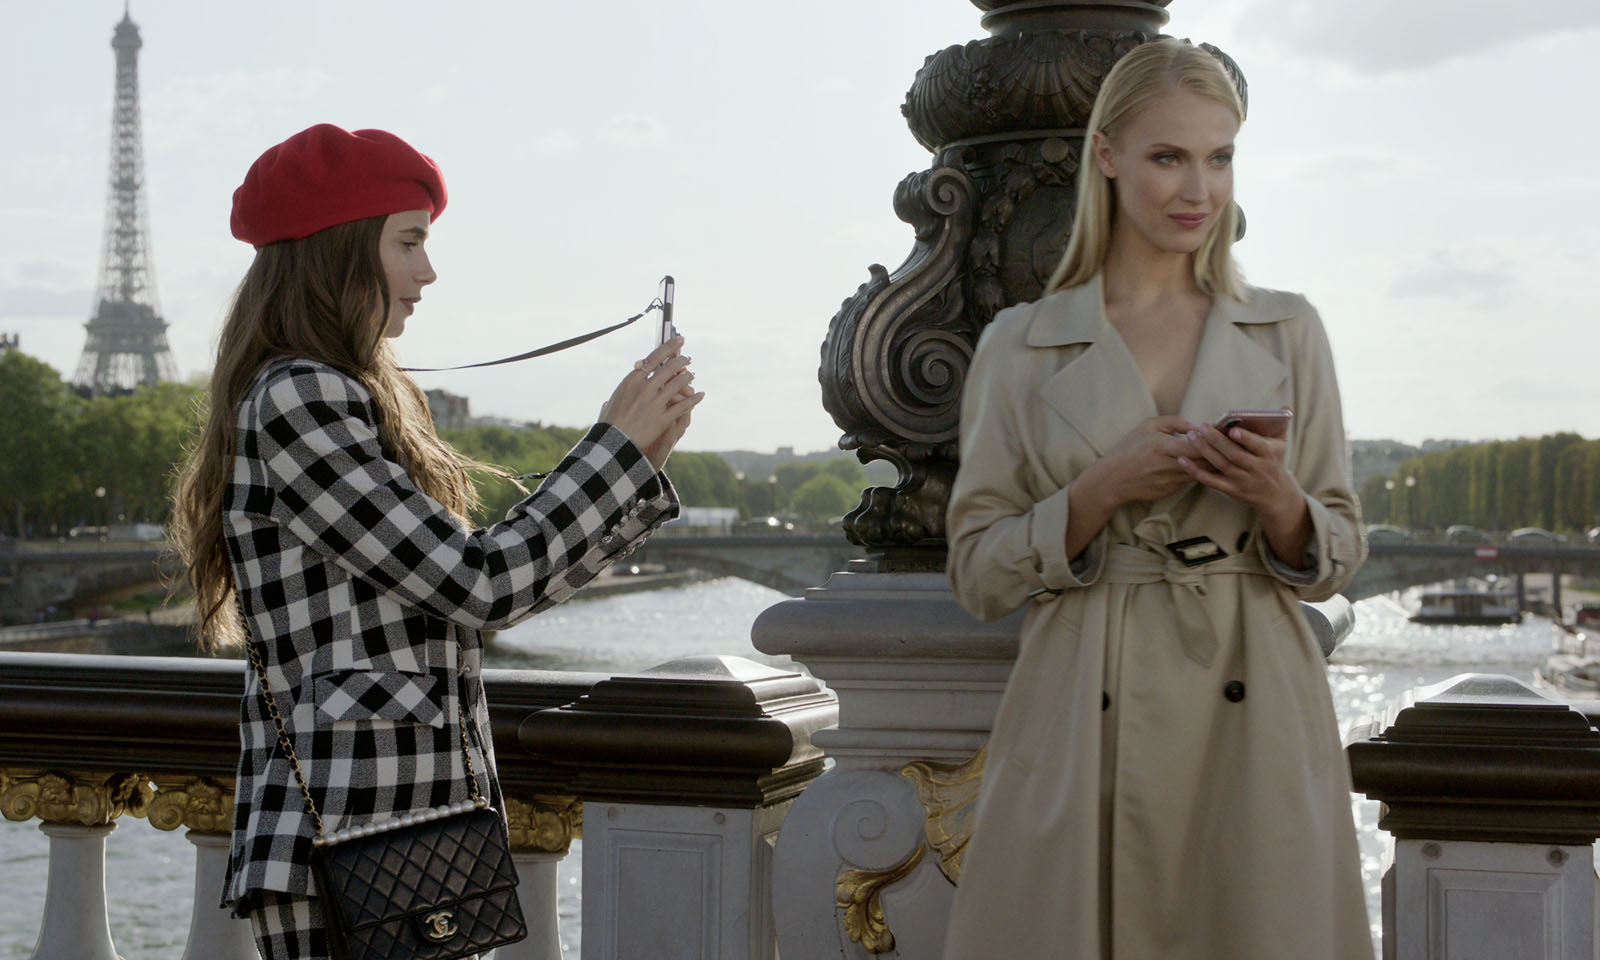 圖 艾蜜莉在巴黎 Emily in Paris S01 (雷) Netflix 文化喜劇